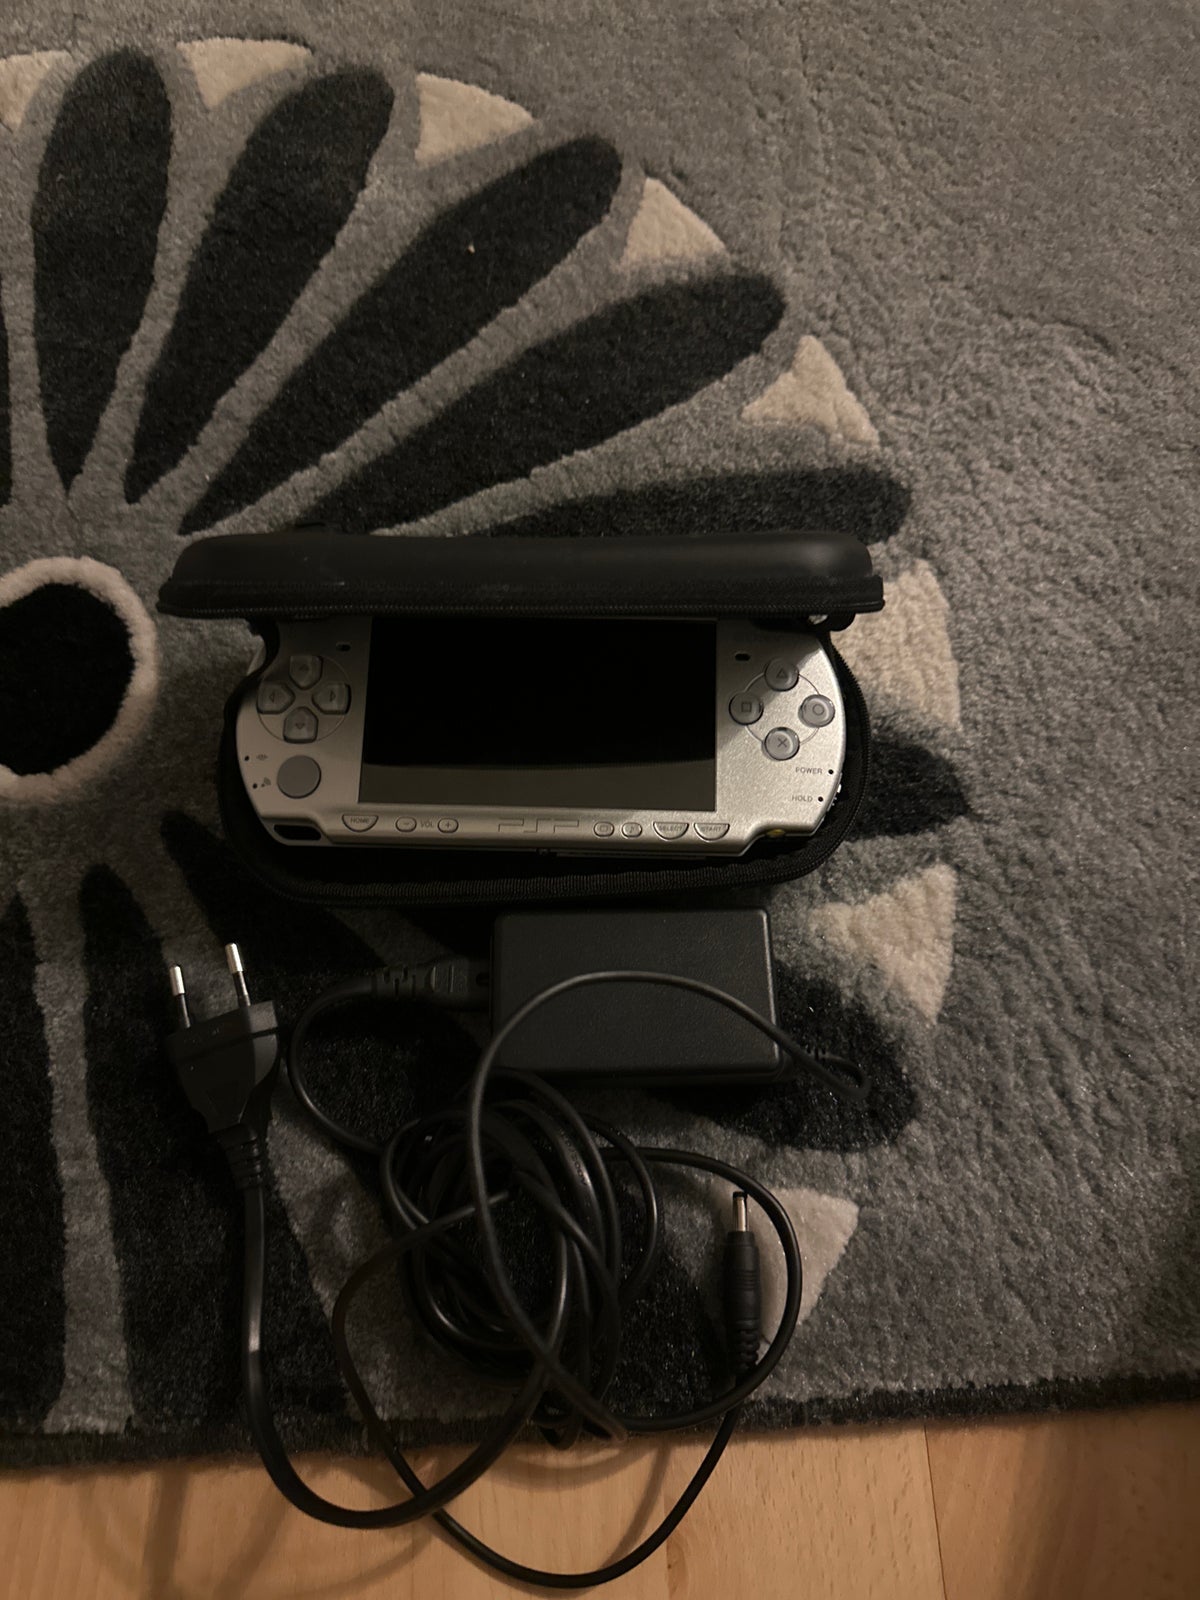 Psp 2004, PSP, anden genre